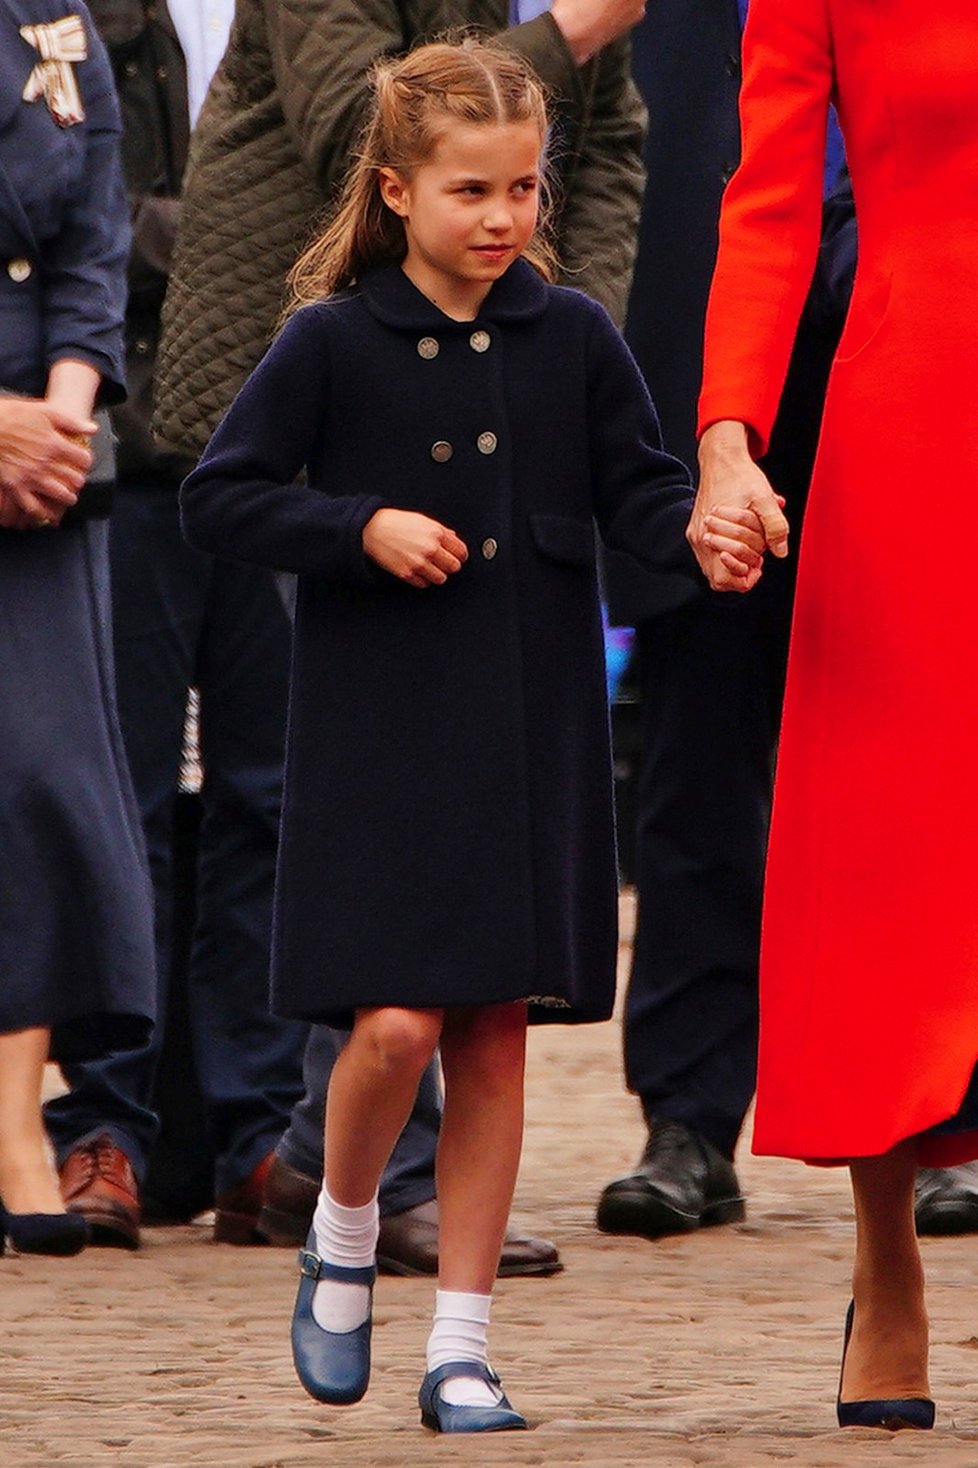 Třetí den oslav královnina jubilea: William a Kate s dětmi vyrazili do Cardiffu